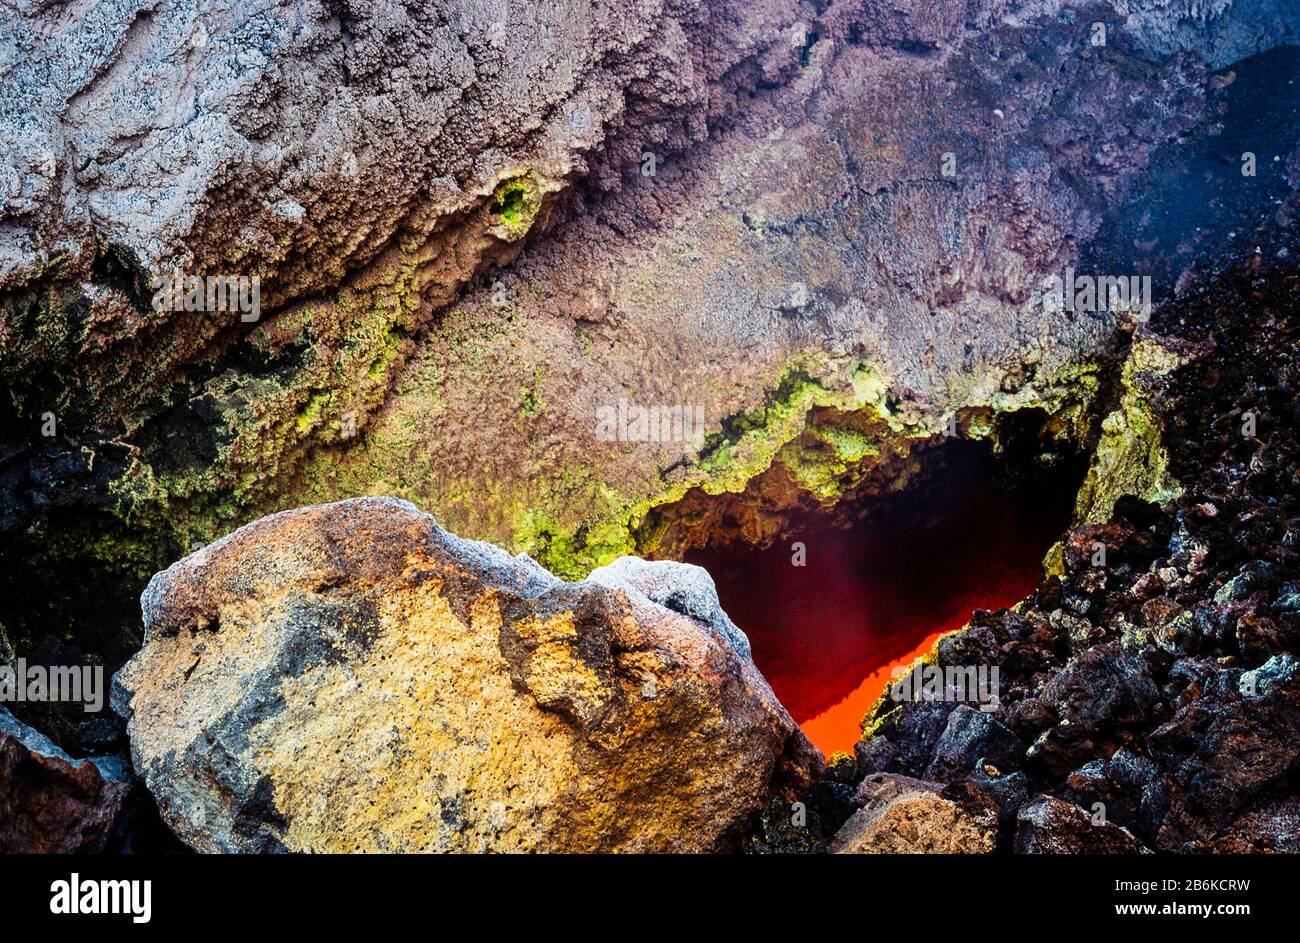 Mirando hacia un flujo activo de lava basáltica desde el caparazón solidificado, con lava roja, incandescente, de alta temperatura, líquida fluyendo por debajo Foto de stock